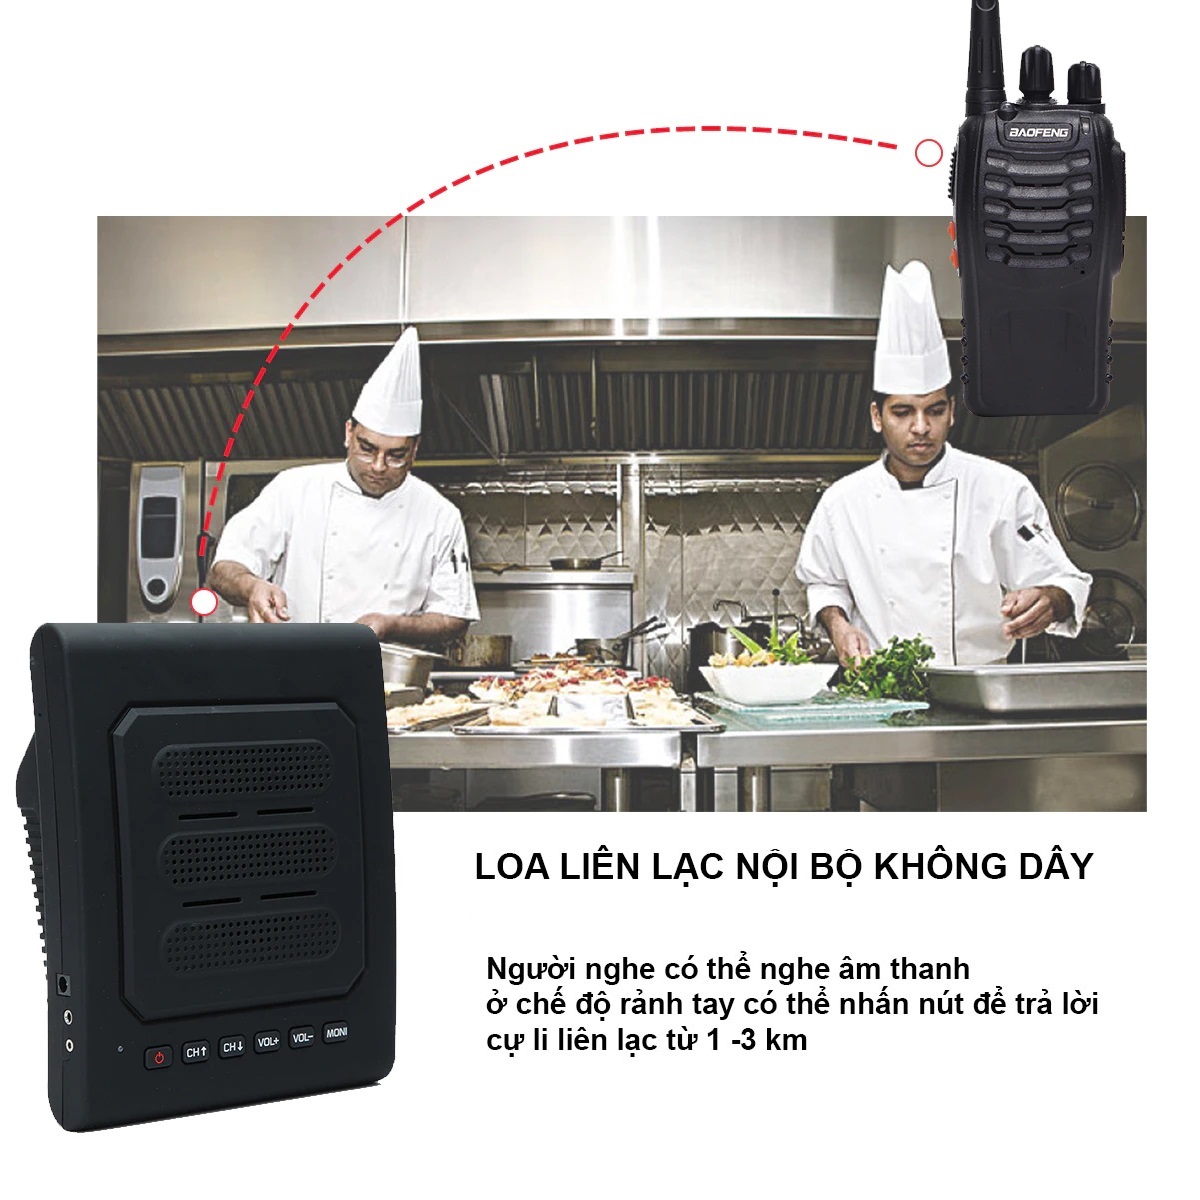 ứng dụng loa Loa hộp thông báo, liên lạc nội bộ 2 chiều không dây phóng đại âm thanh bộ đàm, dùng chung với bộ đàm Motorola, Kenwood, Baofeng, lisheng